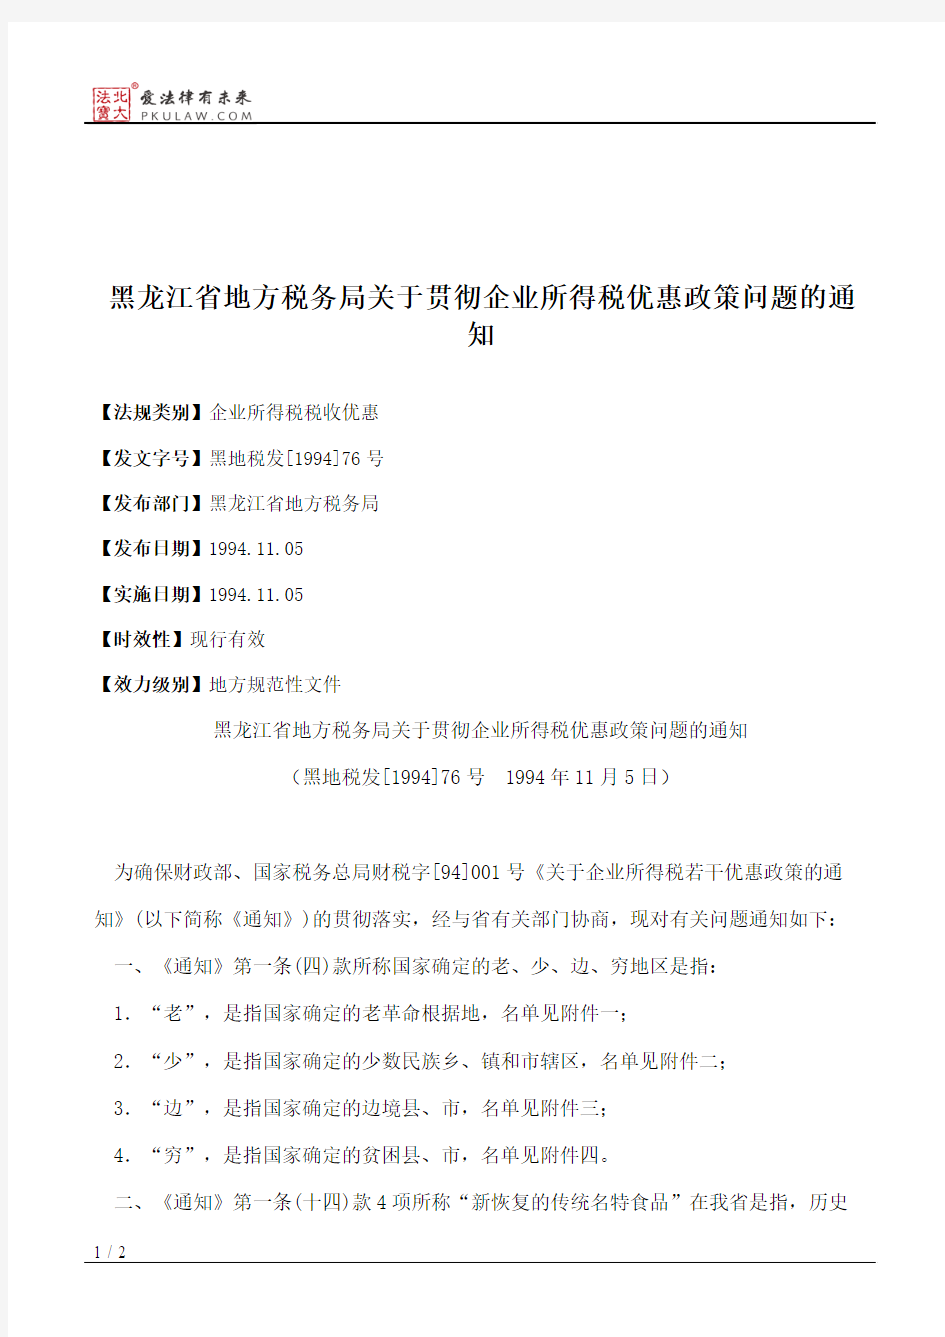 黑龙江省地方税务局关于贯彻企业所得税优惠政策问题的通知